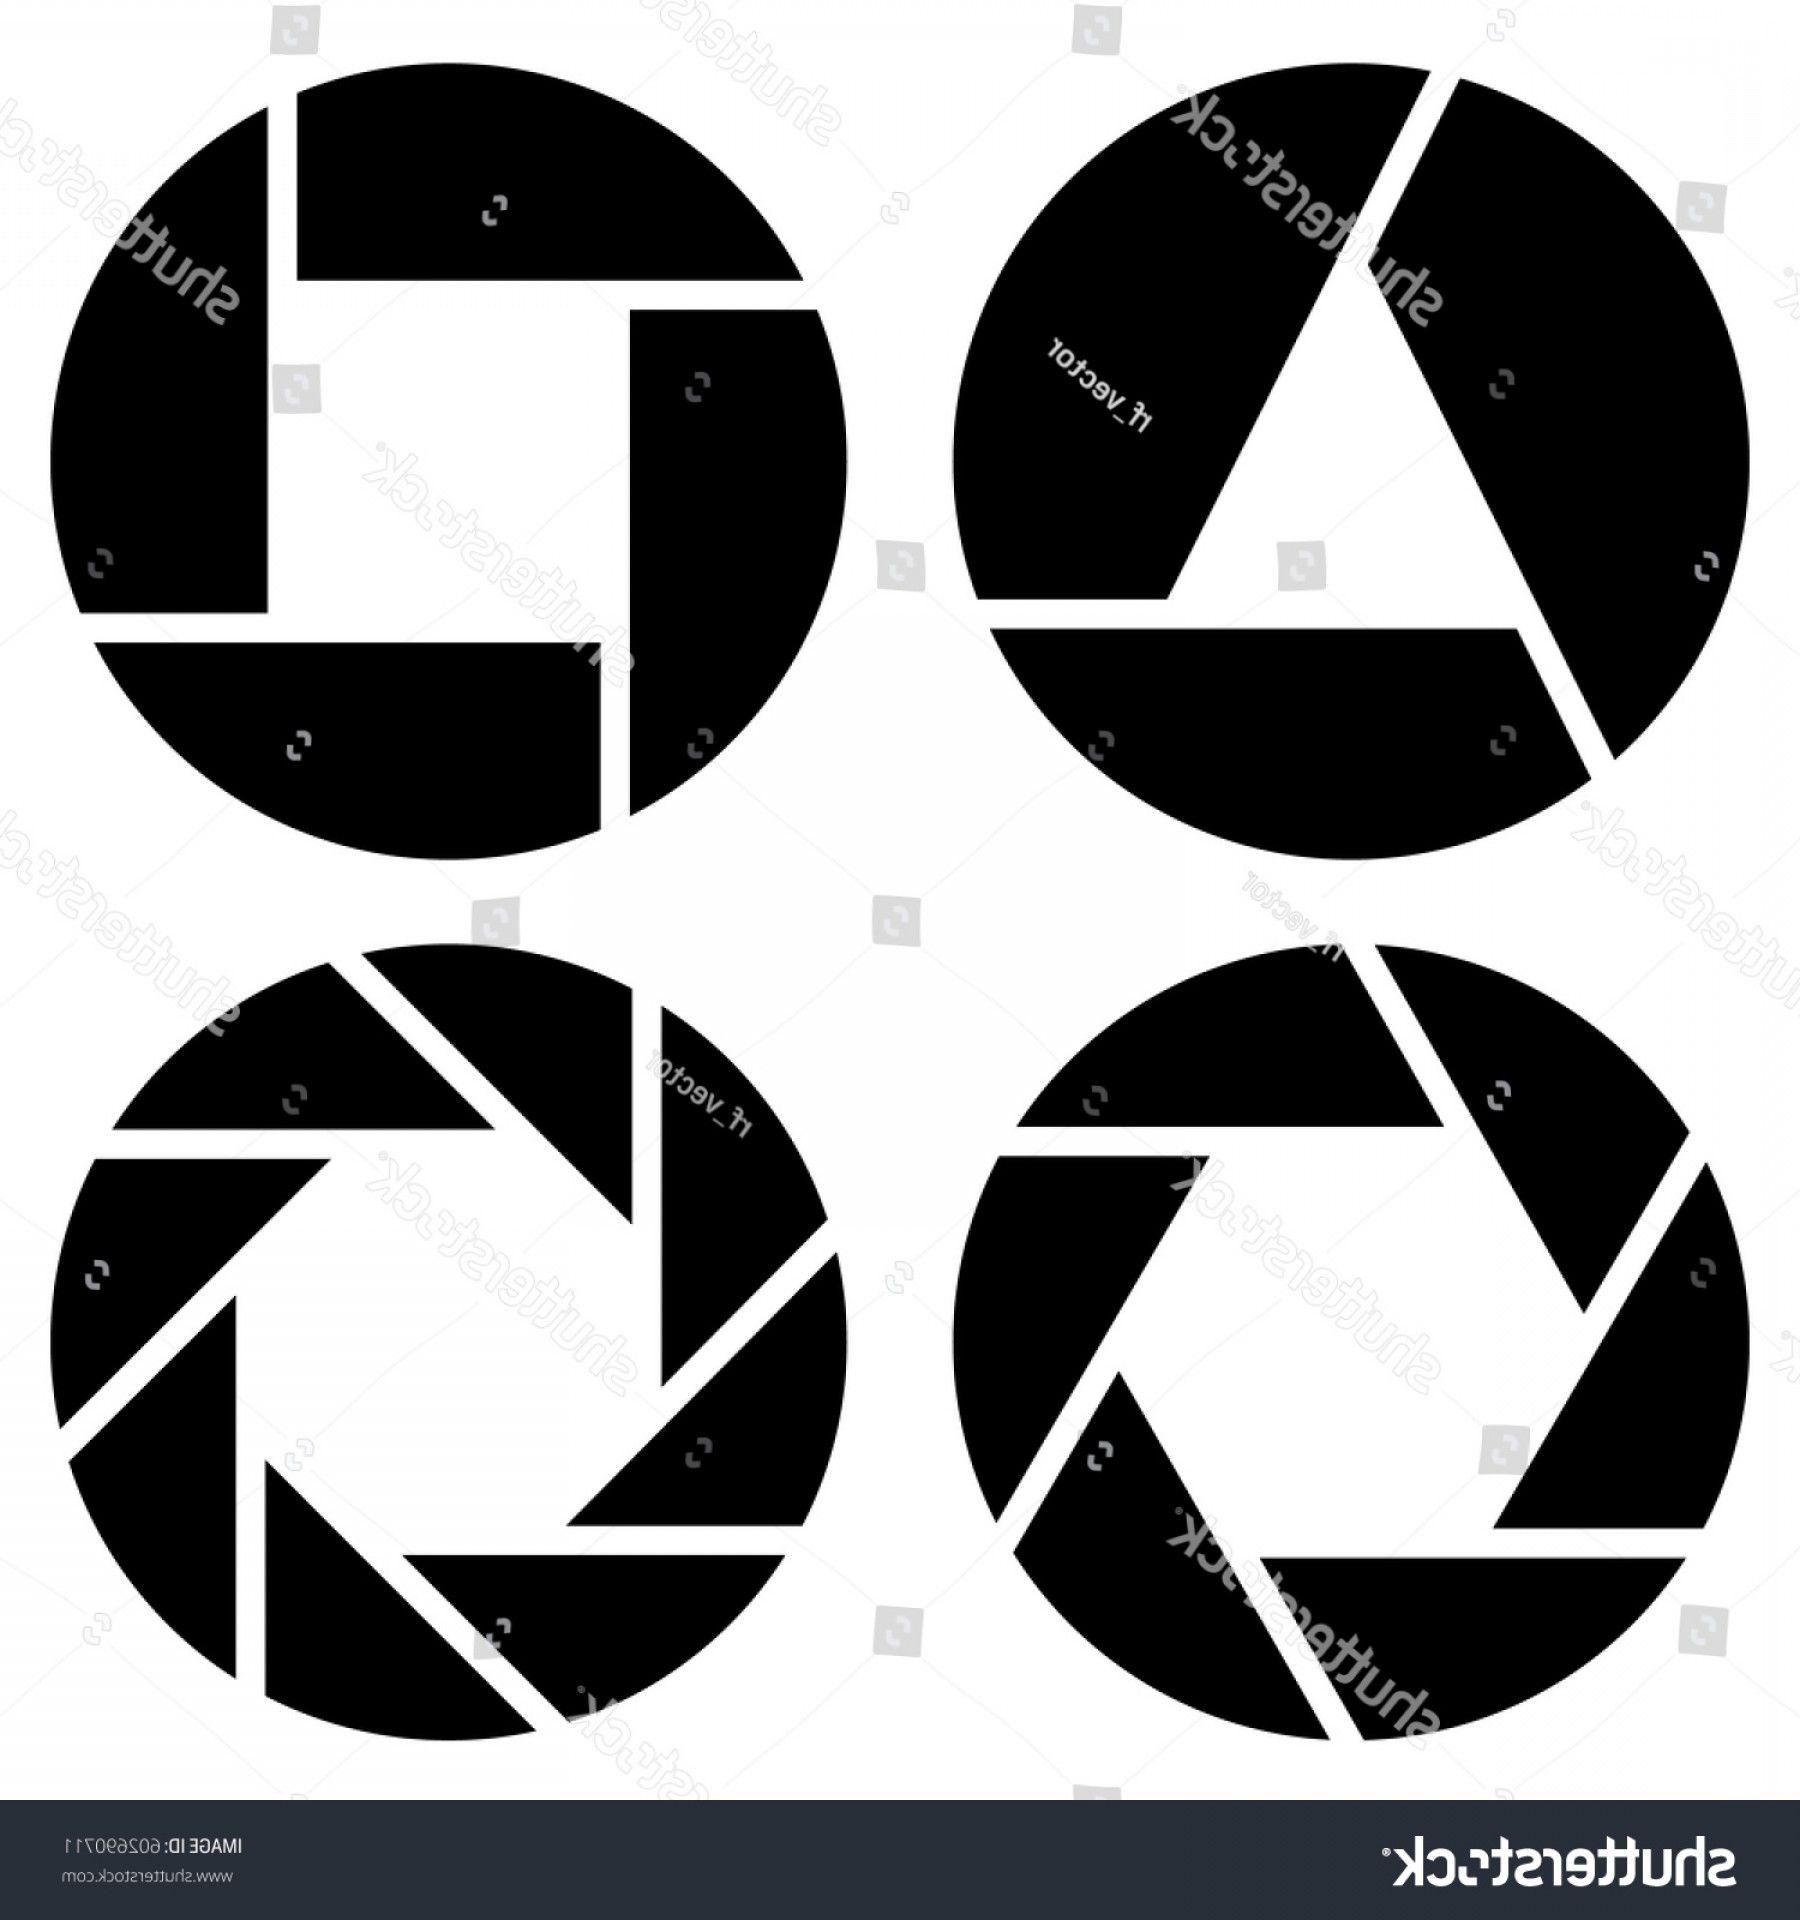 Aperture Logo - Aperture Camera Lens Symbol Pictogram | SOIDERGI